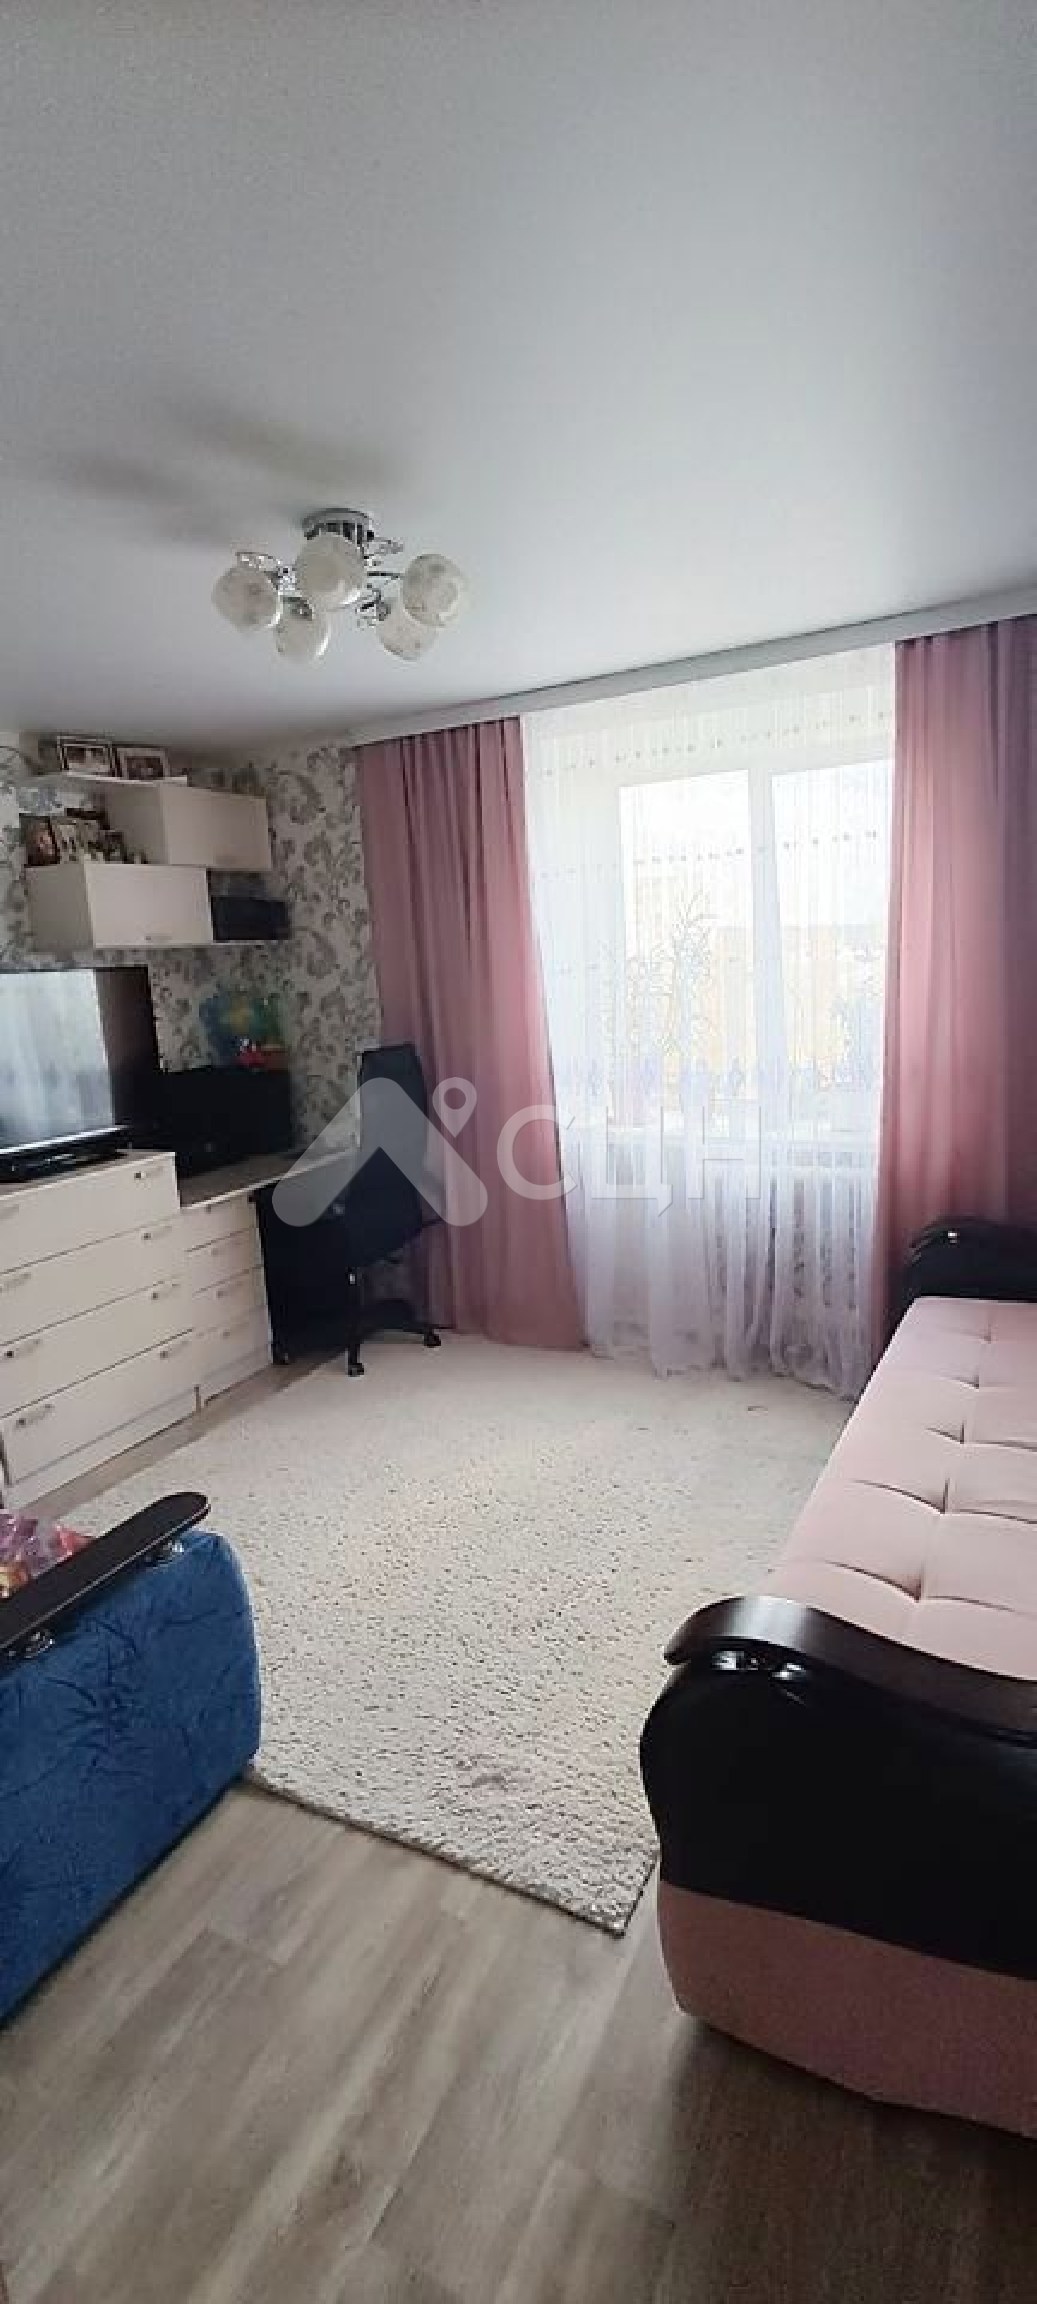 купить квартиру в сарове
: Г. Саров, улица Зернова, 68, 1-комн квартира, этаж 4 из 9, продажа.